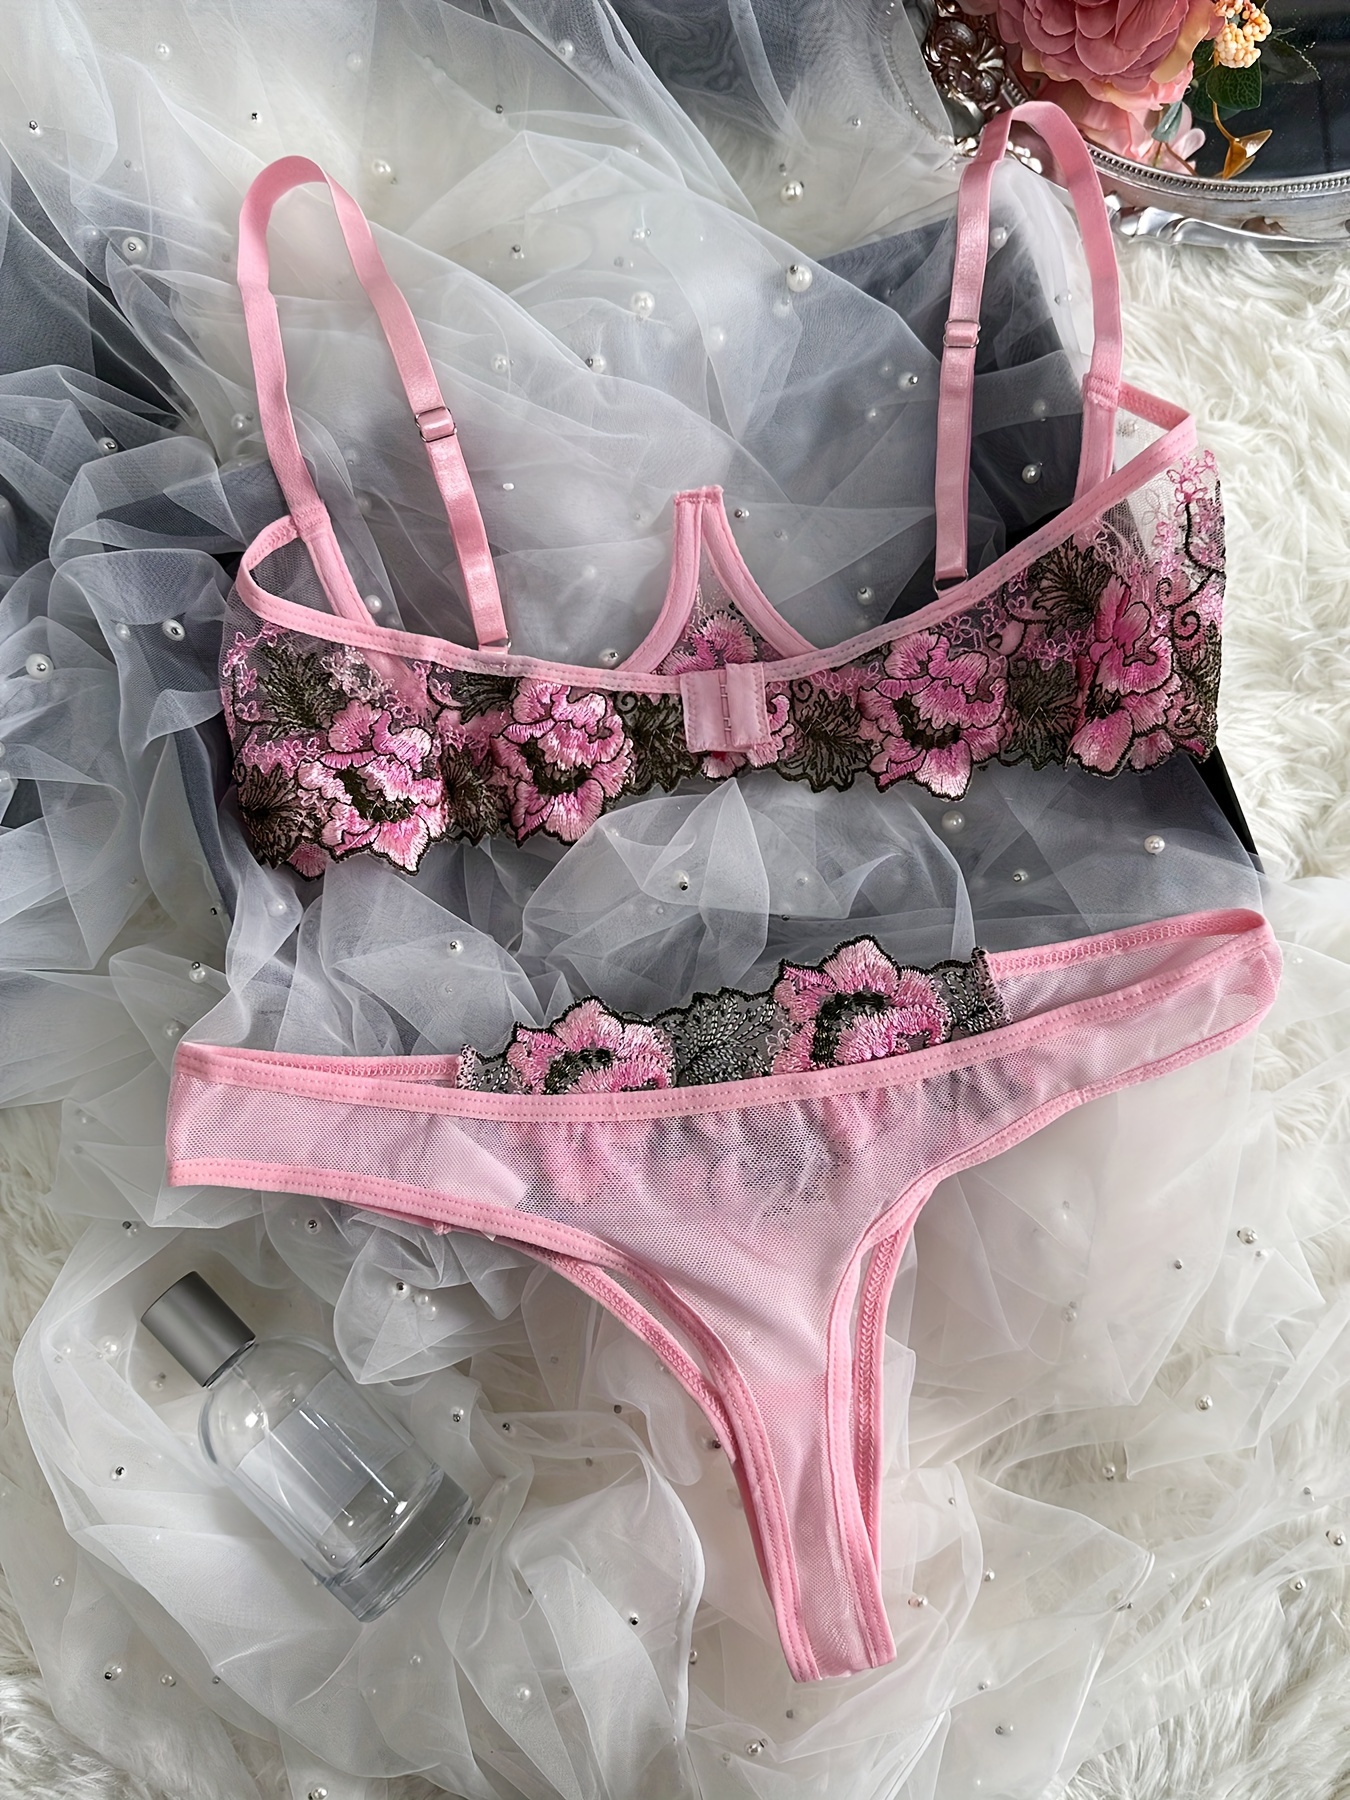 Seductive lingerie set, open cups, flowers